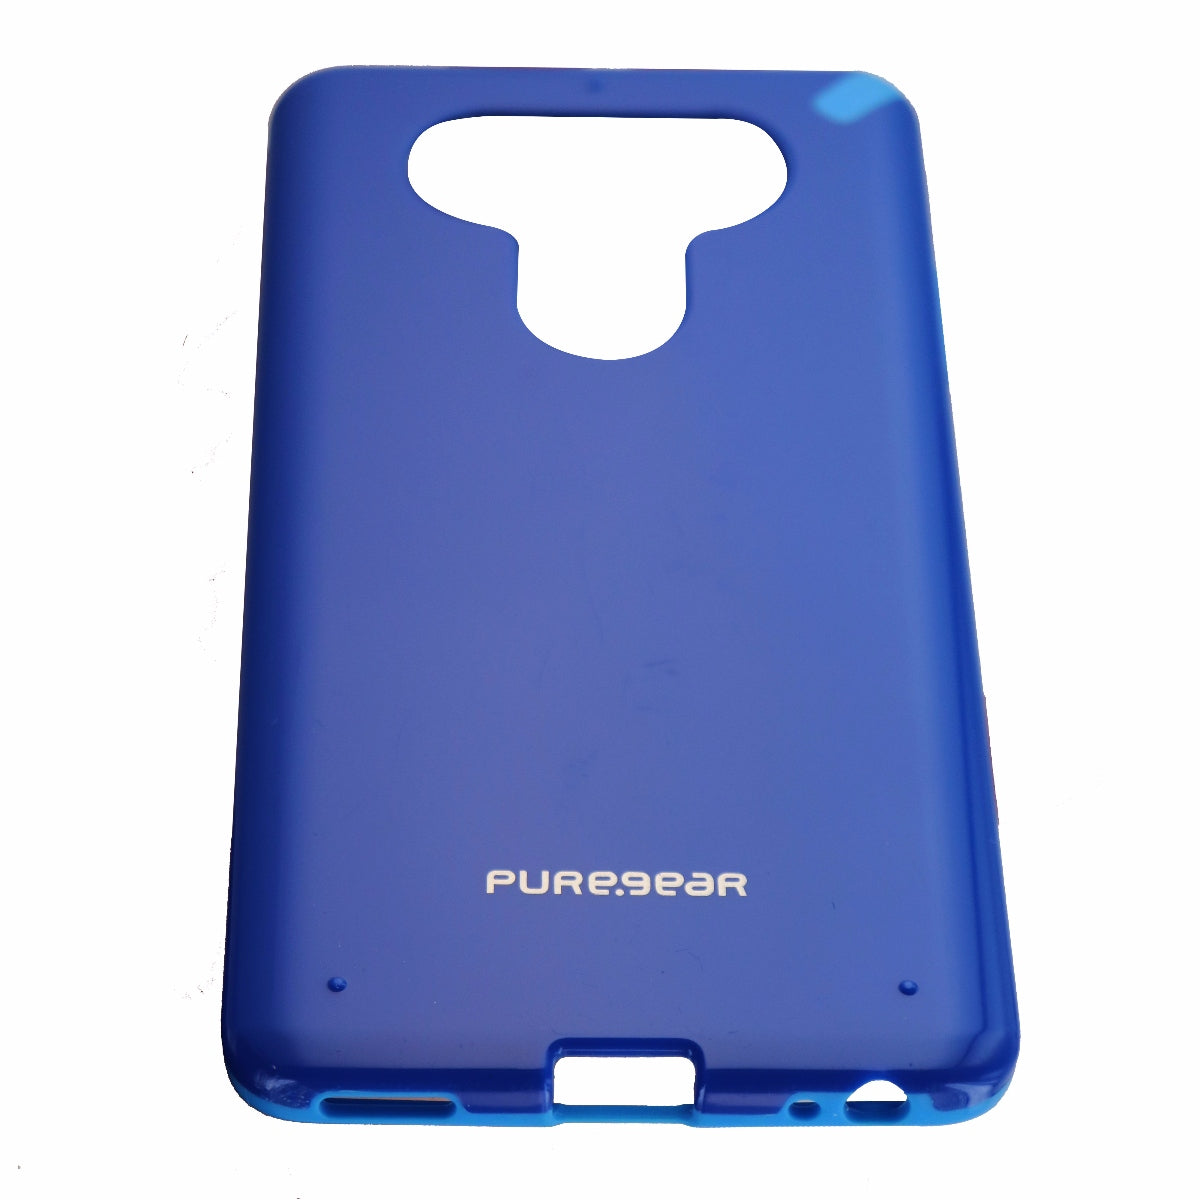 PureGear Slim Shell Series Hardshell Case Cover for LG V20 - Blue/Light Blue Cell Phone - Cases, Covers & Skins PureGear    - Simple Cell Bulk Wholesale Pricing - USA Seller